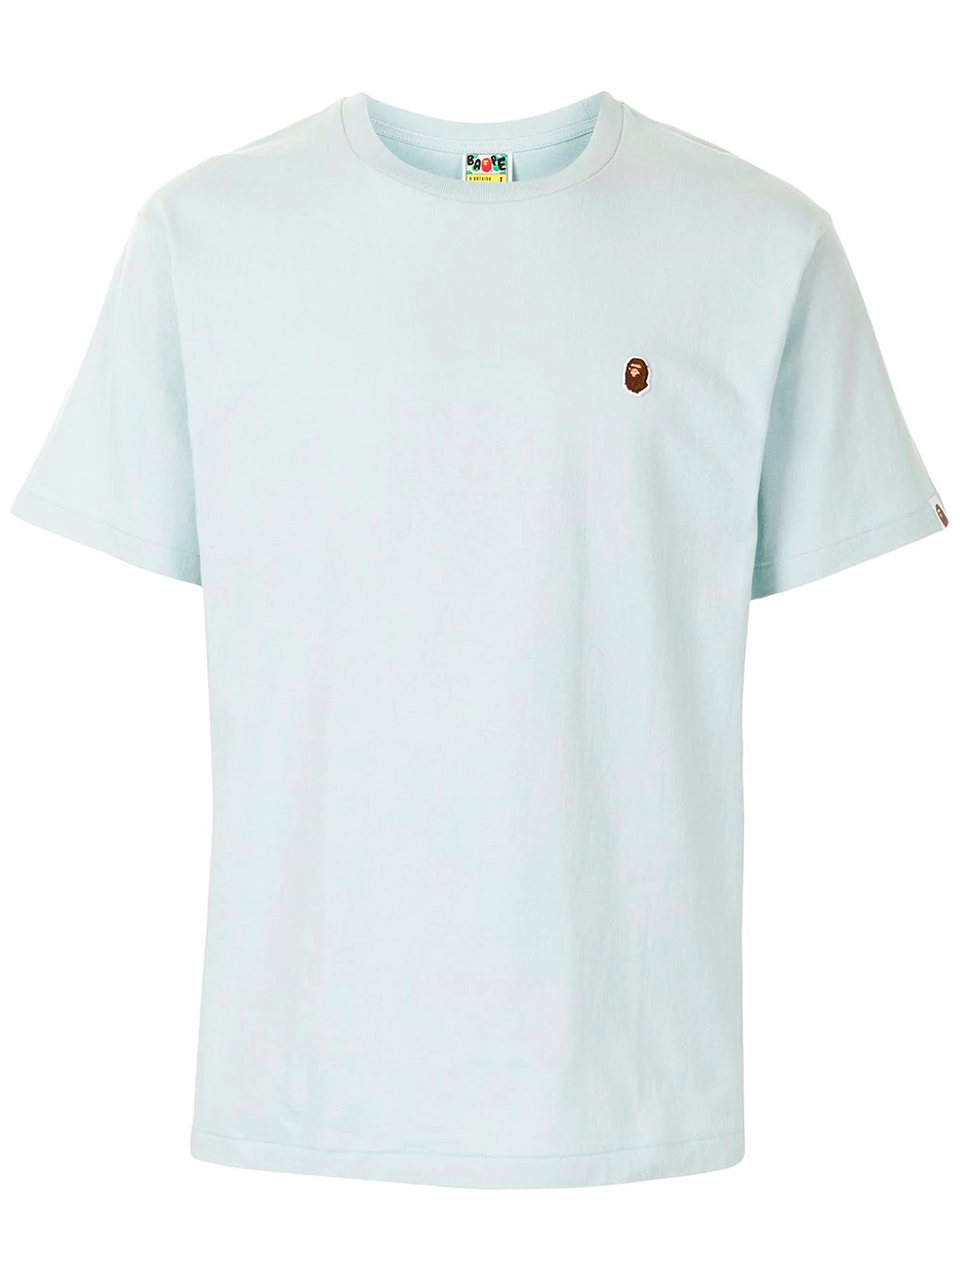 Imagem de: Camiseta BAPE Cinza com Logo Pequeno